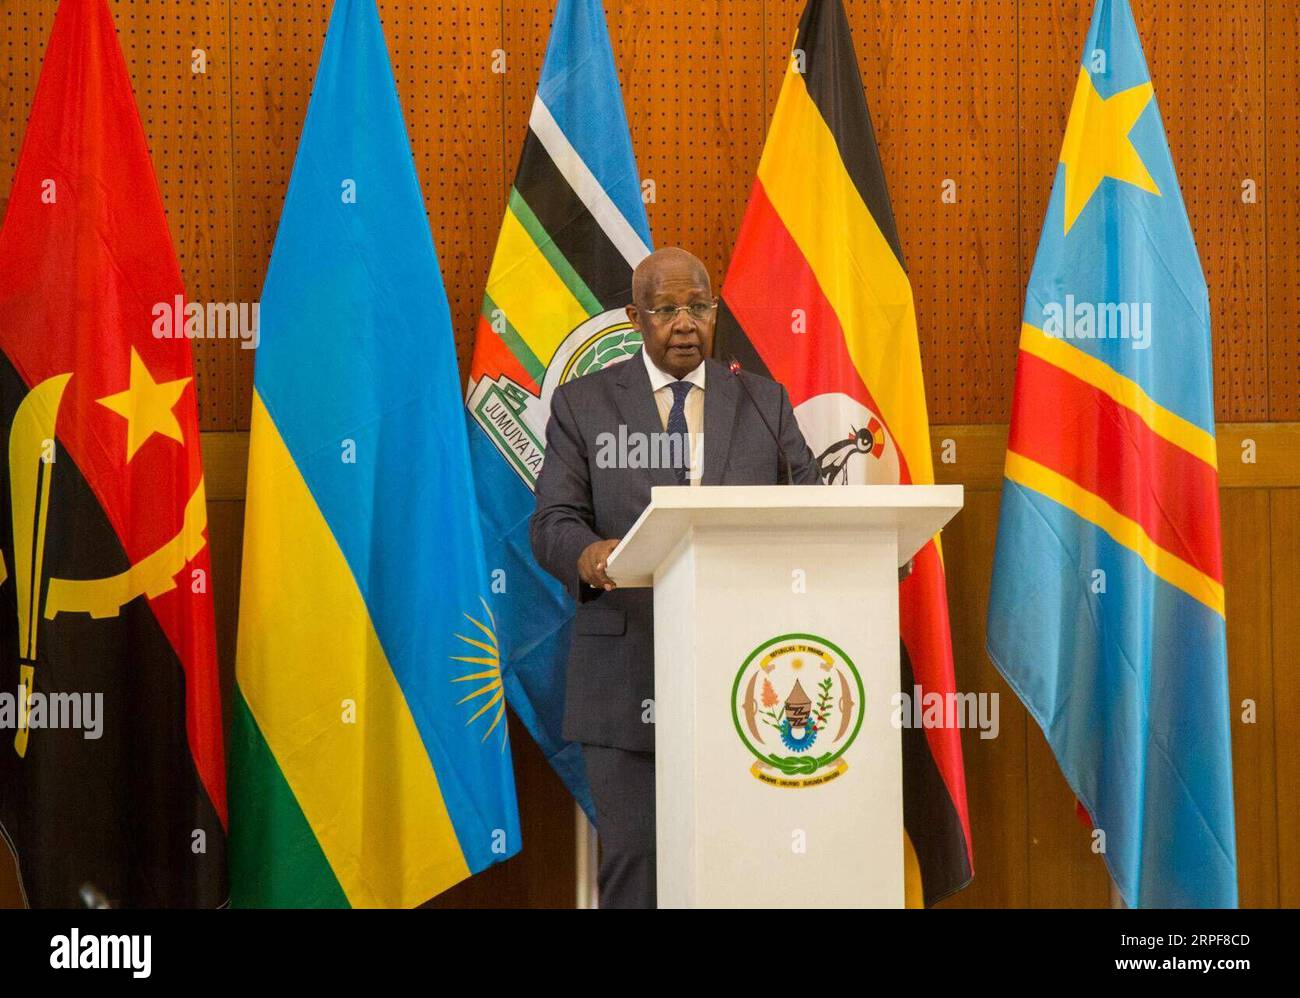 (190916) -- KIGALI, Sett. 16, 2019 (Xinhua) -- ugandese Ministro degli Esteri Sam Kutesa offre commento alla cerimonia di apertura della prima riunione della commissione ad hoc del memorandum d'intesa (MI) firmato nel mese di agosto a cessare le ostilità tra Uganda e Rwanda, a Kigali, capitale del Rwanda, il 7 settembre 16, 2019. In Ruanda e in Uganda il lunedì hanno ribadito il loro impegno ad astenersi da qualsiasi atto di destabilizzazione contro ogni altra seguenti deliberazioni nel corso della prima riunione della commissione ad hoc del memorandum d'intesa (MI) firmato nel mese di agosto a cessare le ostilità fra th Foto Stock